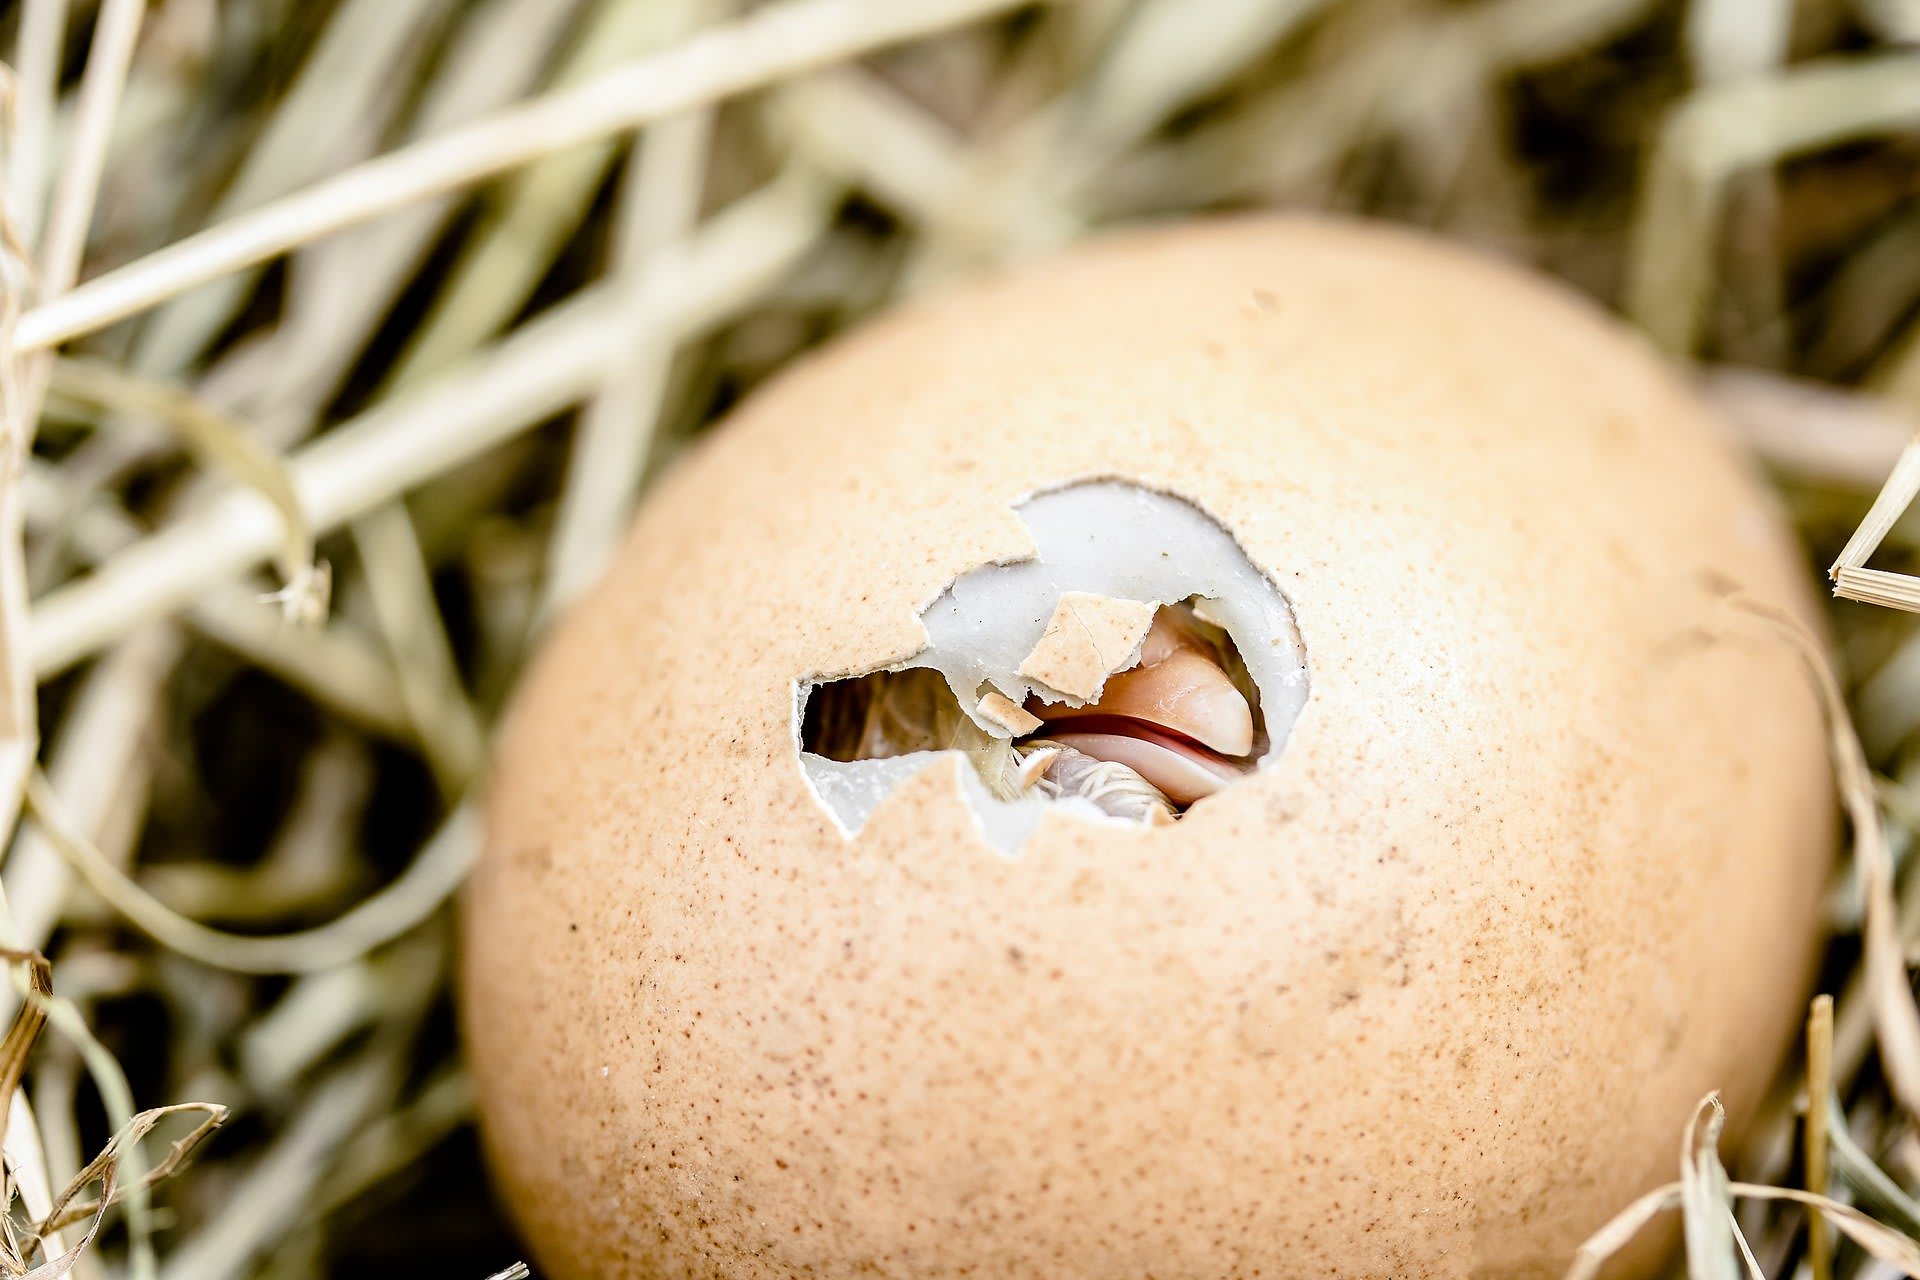 Díky novým technologiím je možné rozpoznat pohlaví kuřete ještš ve vejci.